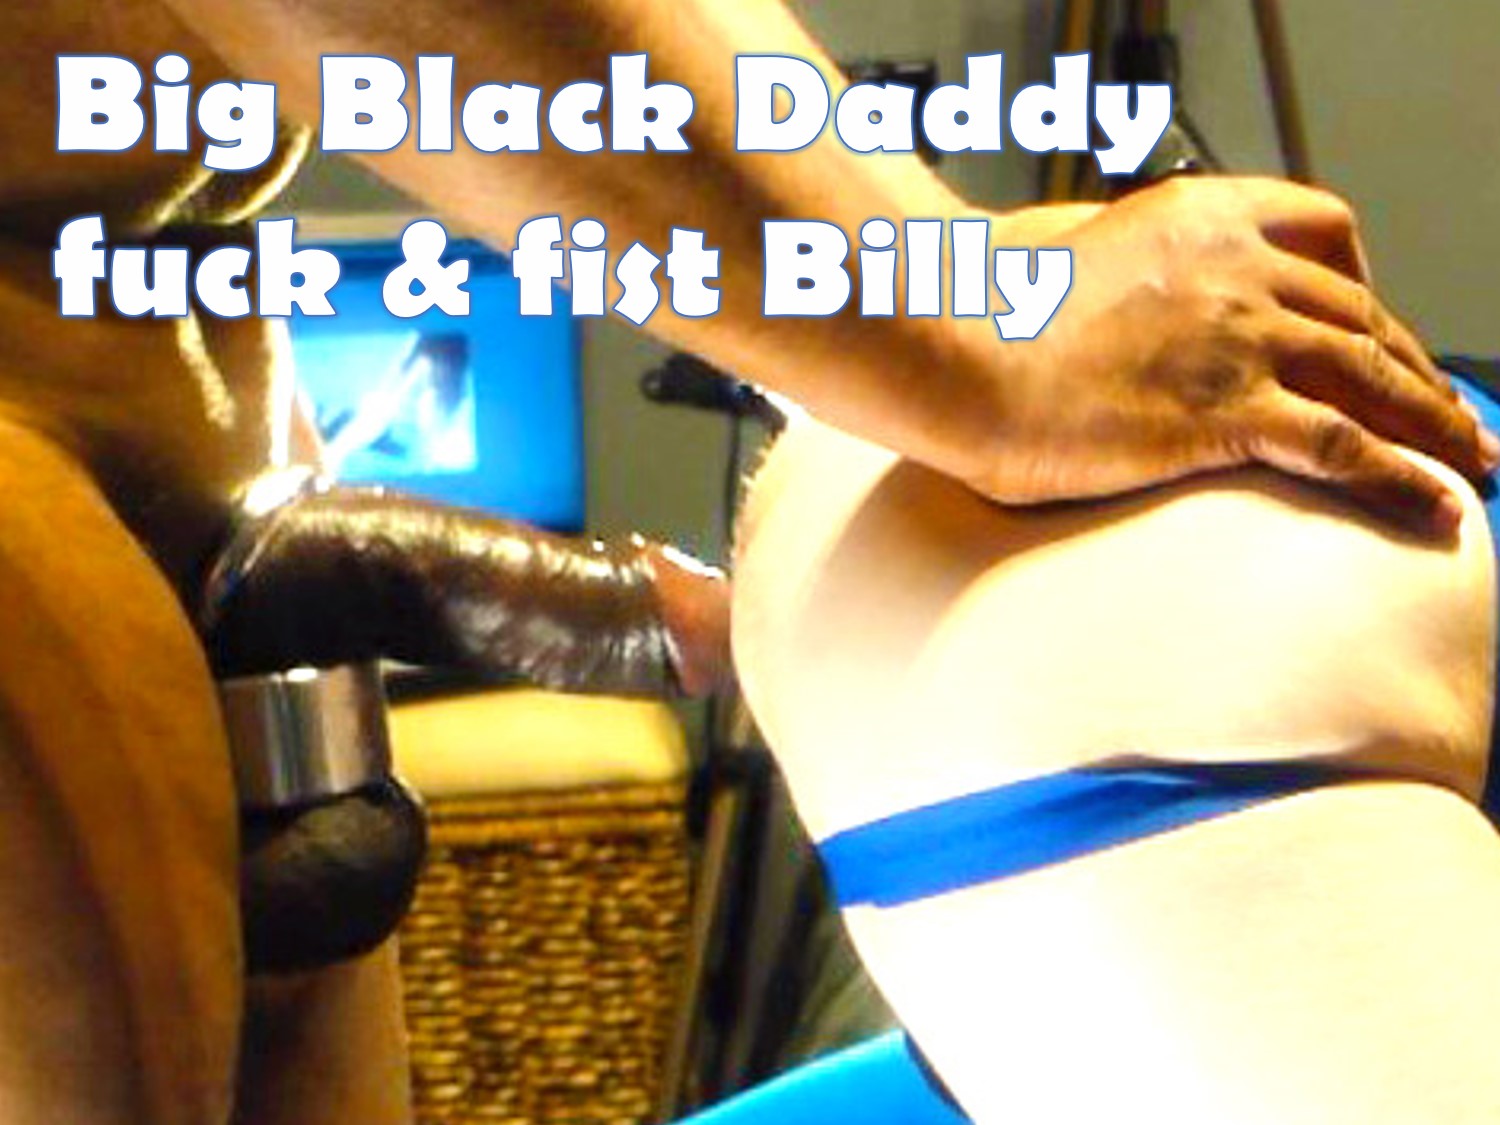 57. Big Black Daddy fuck & fist Billy - March 2017